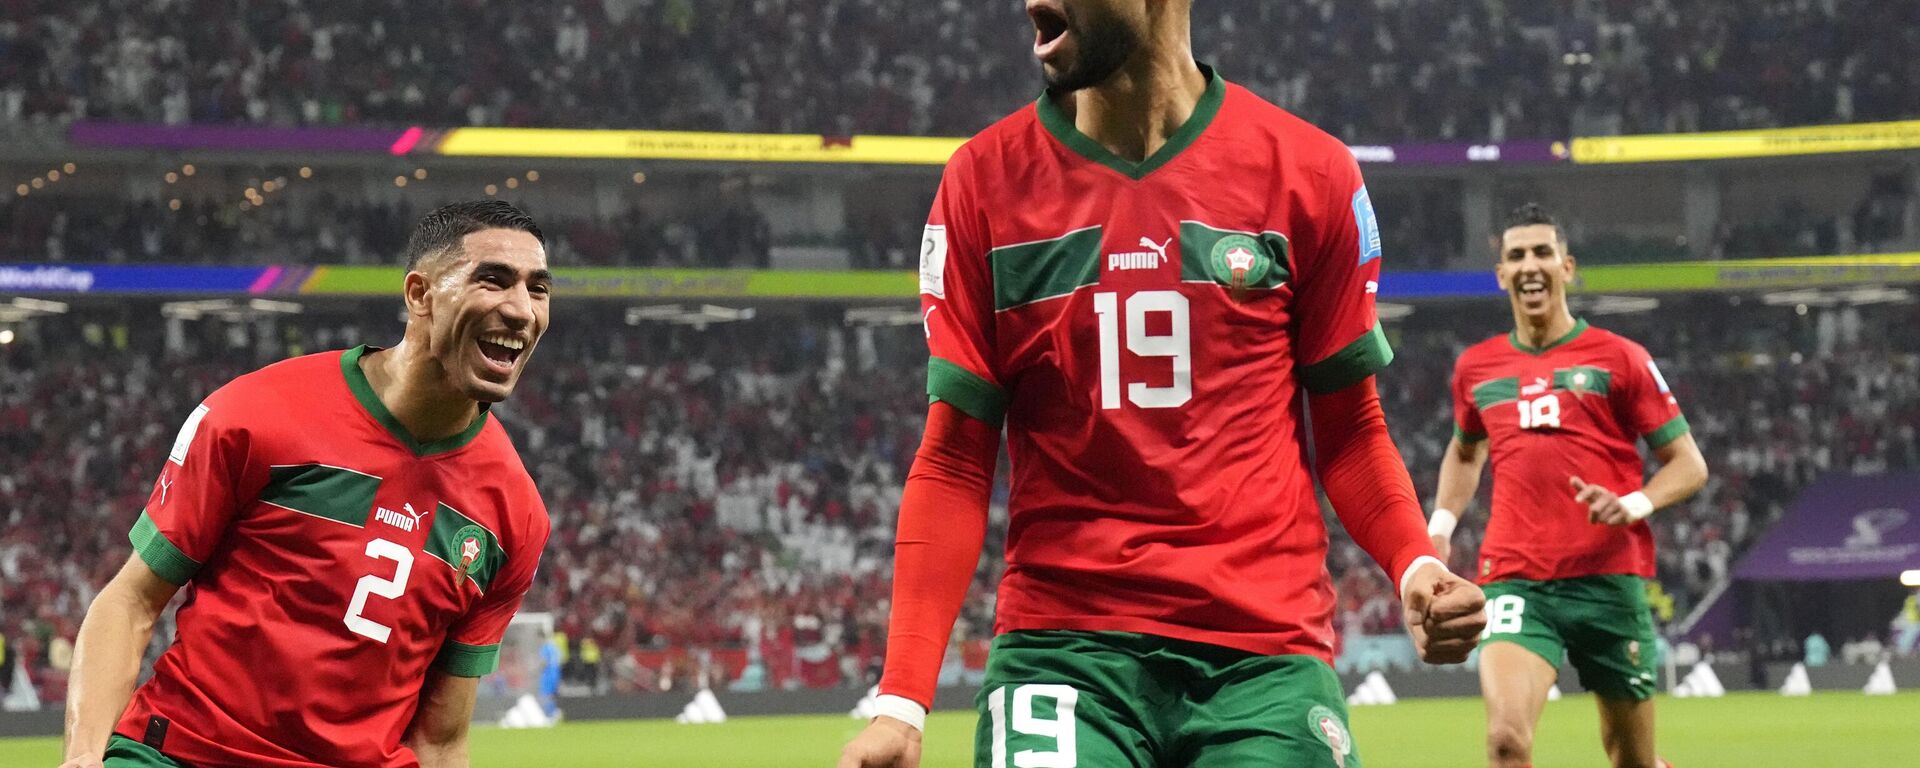 Marruecos vence a Portugal y hace historia como primer equipo africano en llegar a semifinales  - Sputnik Mundo, 1920, 10.12.2022